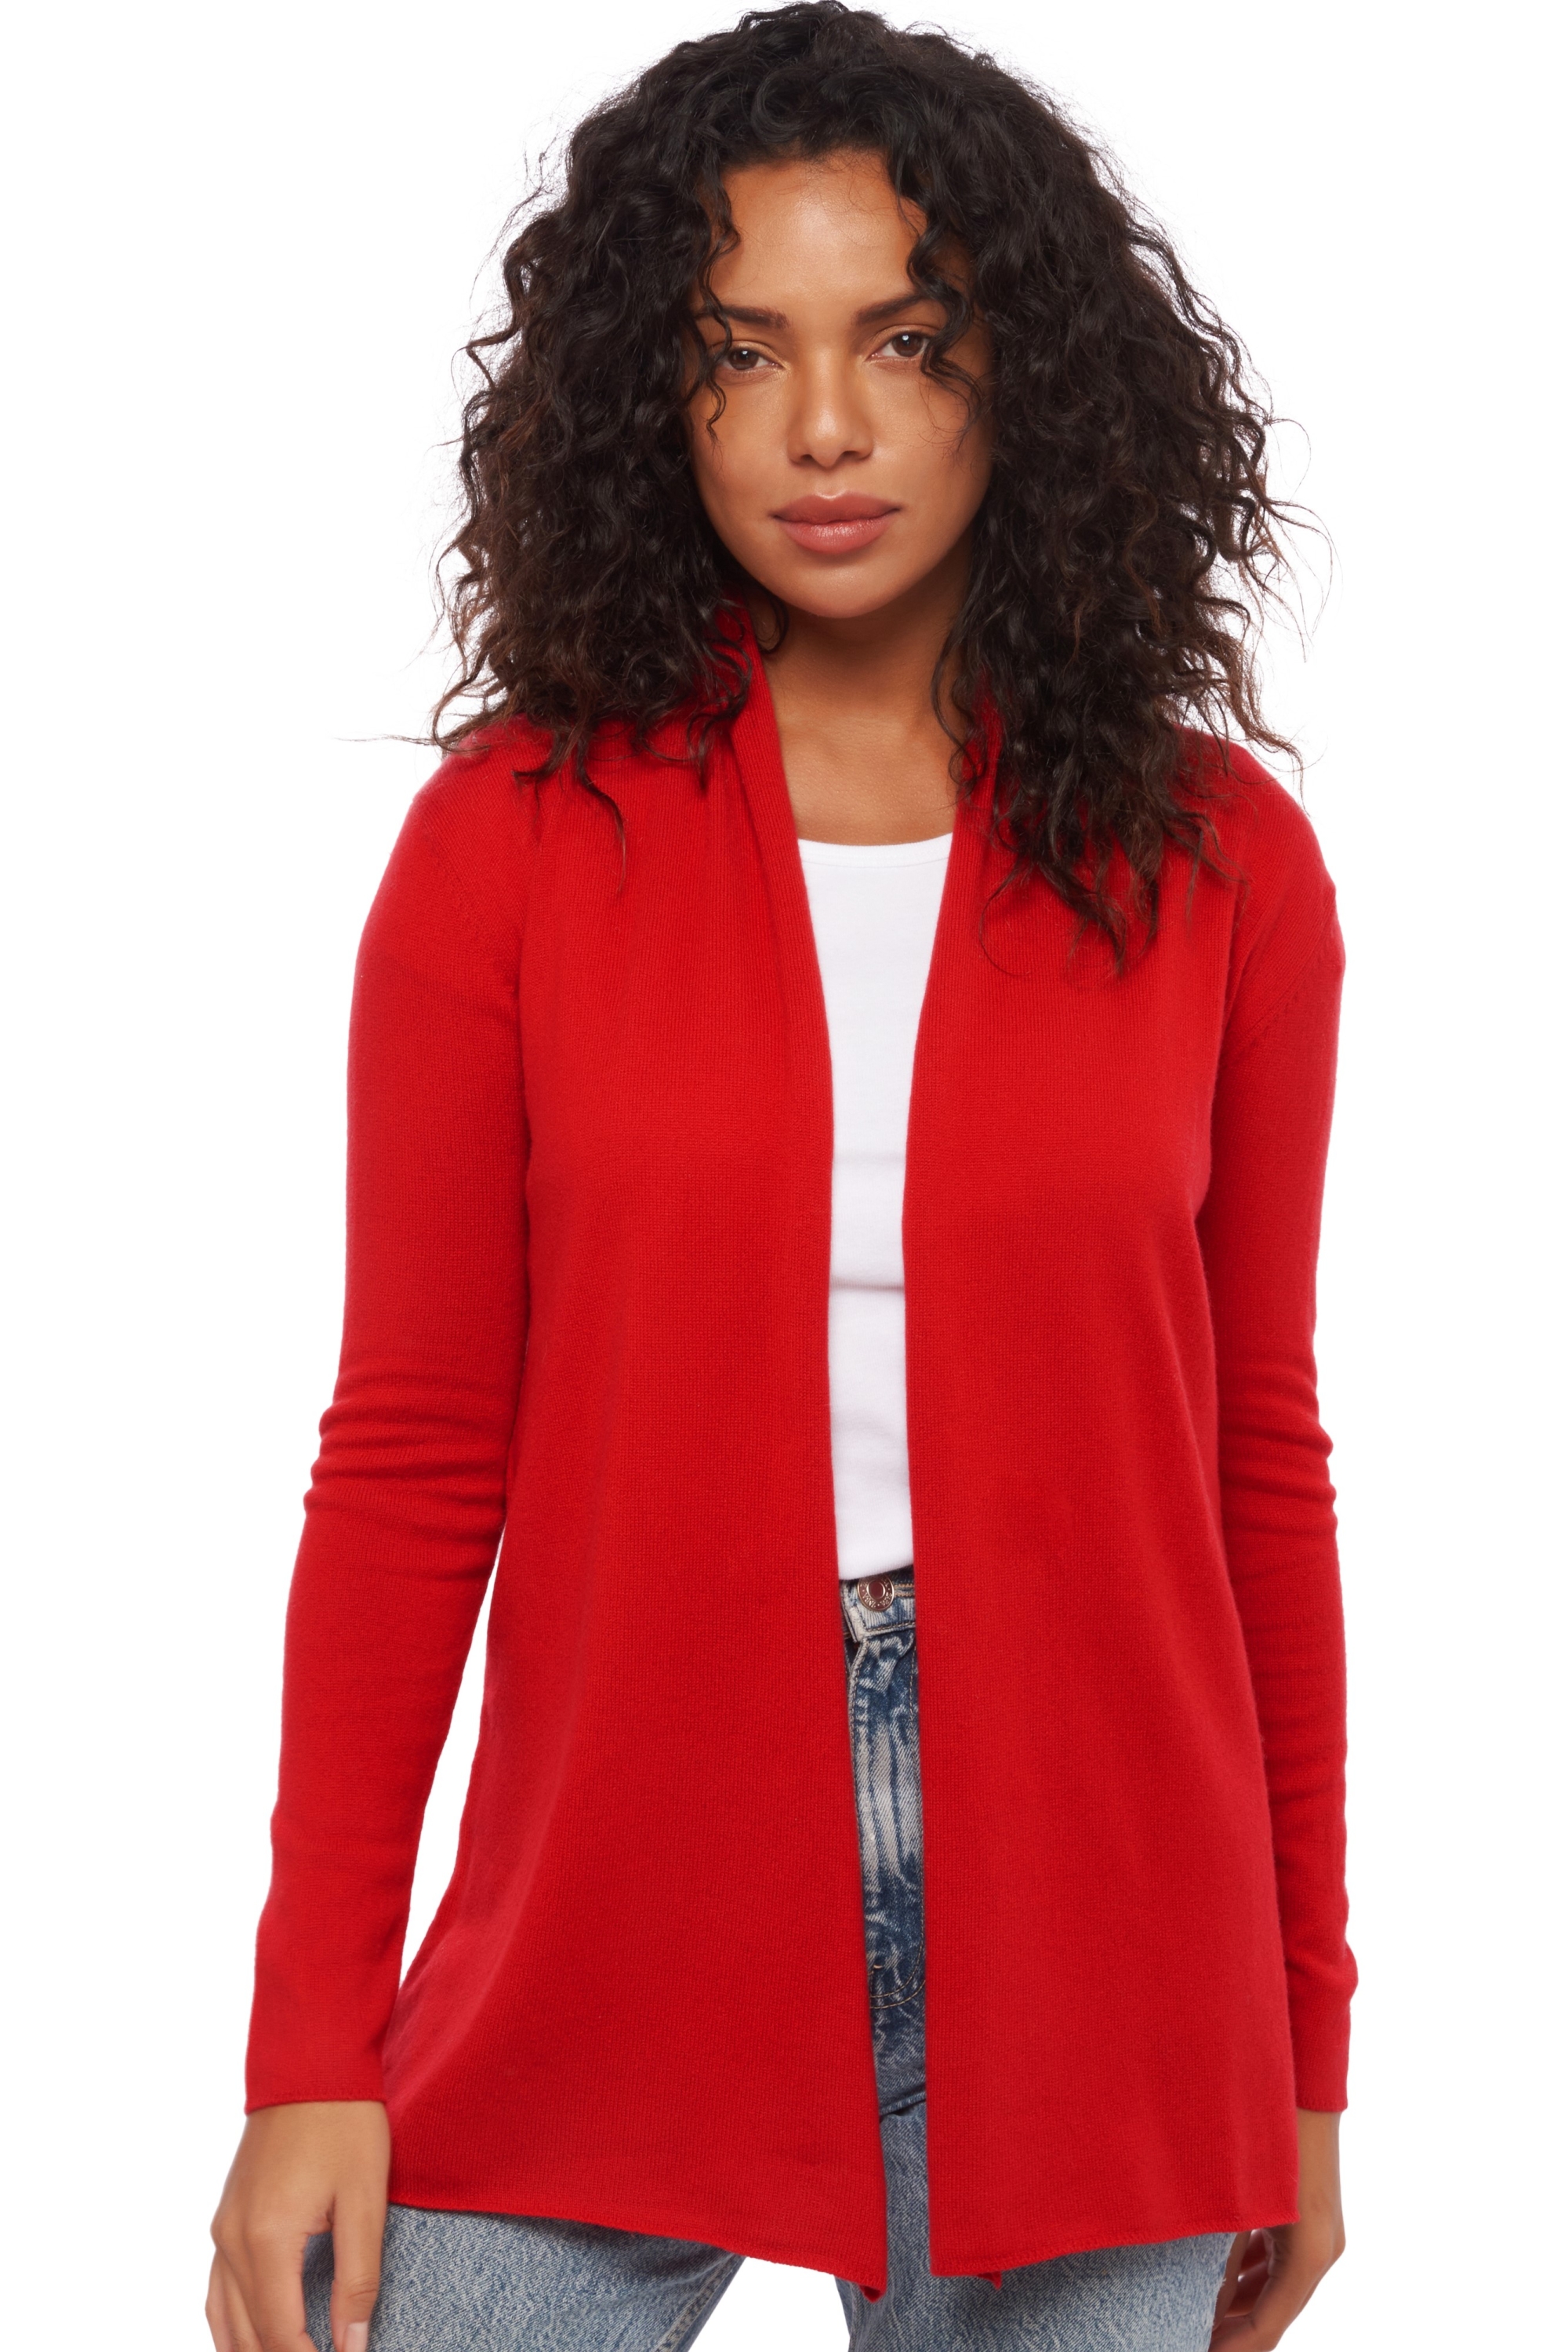 Cachemire robe manteau femme pucci rouge velours 3xl